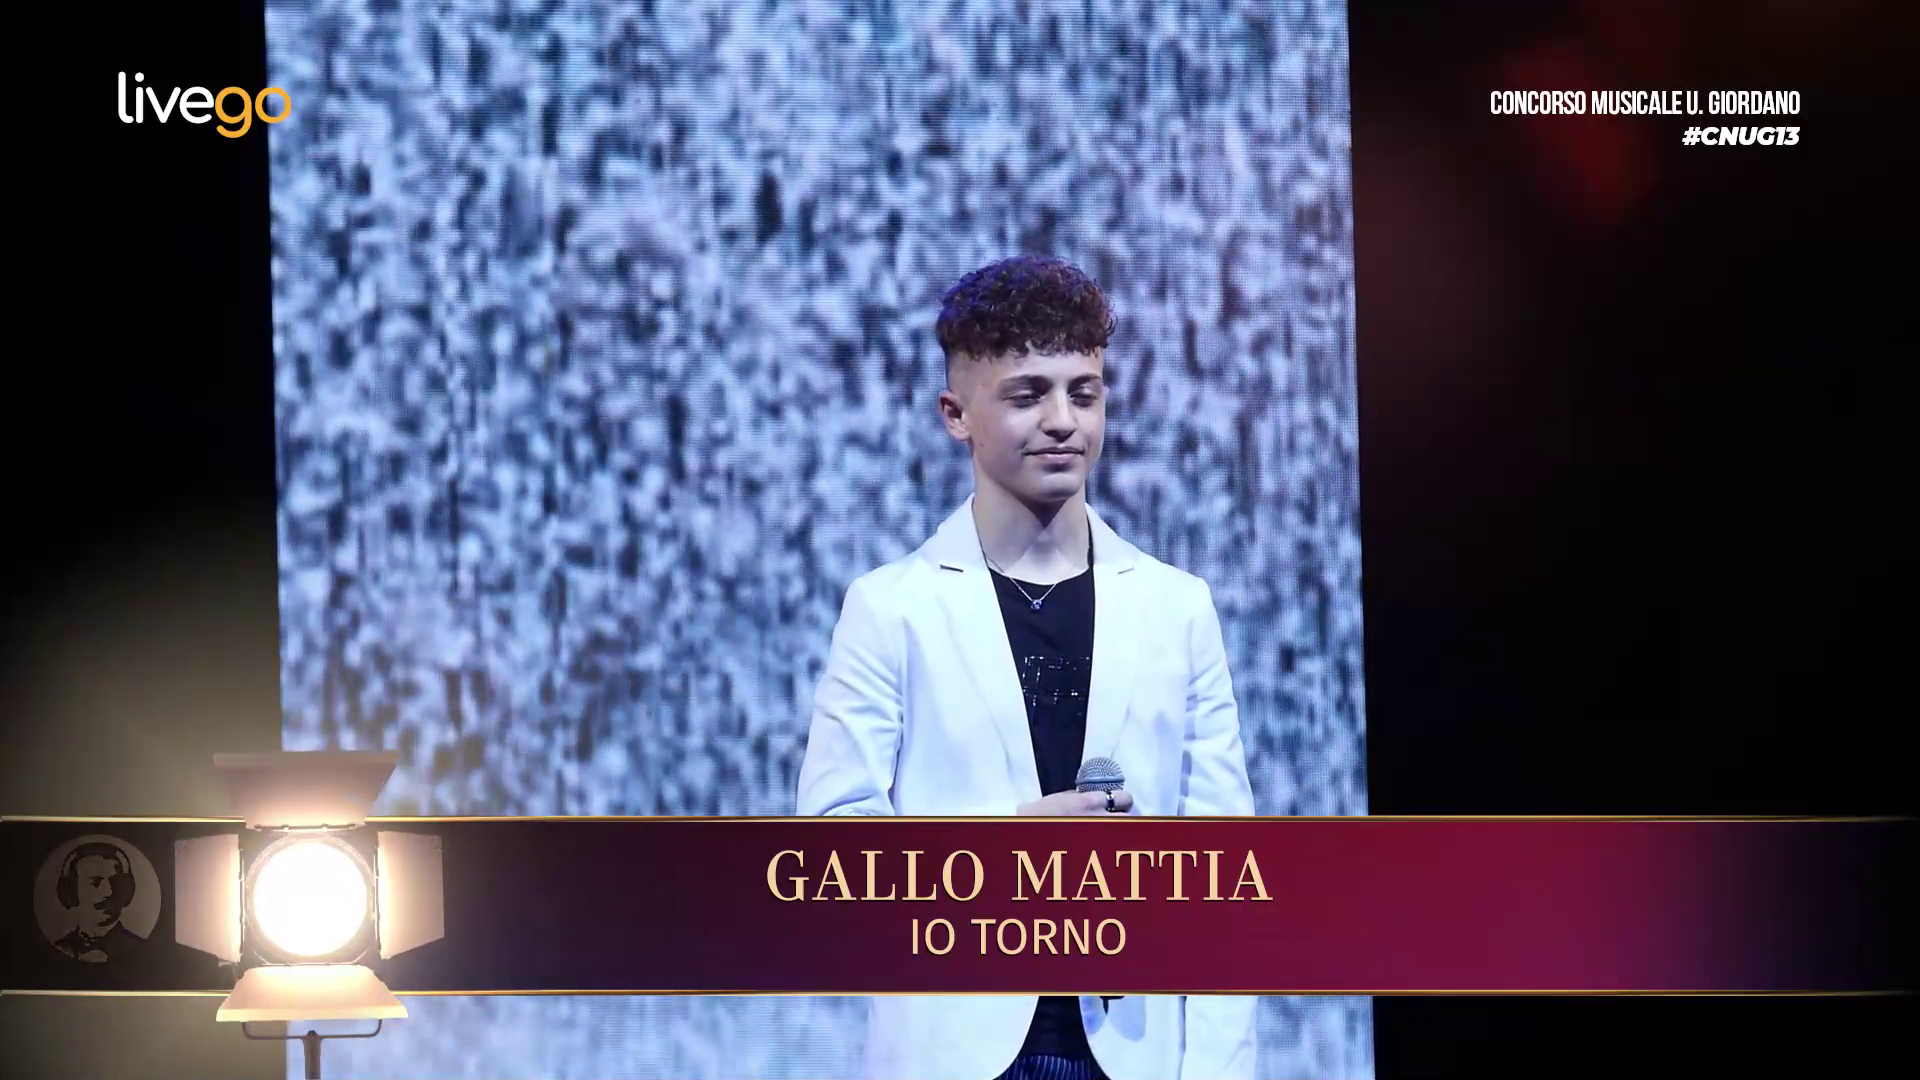 34 - GALLO MATTIA - IO TORNO